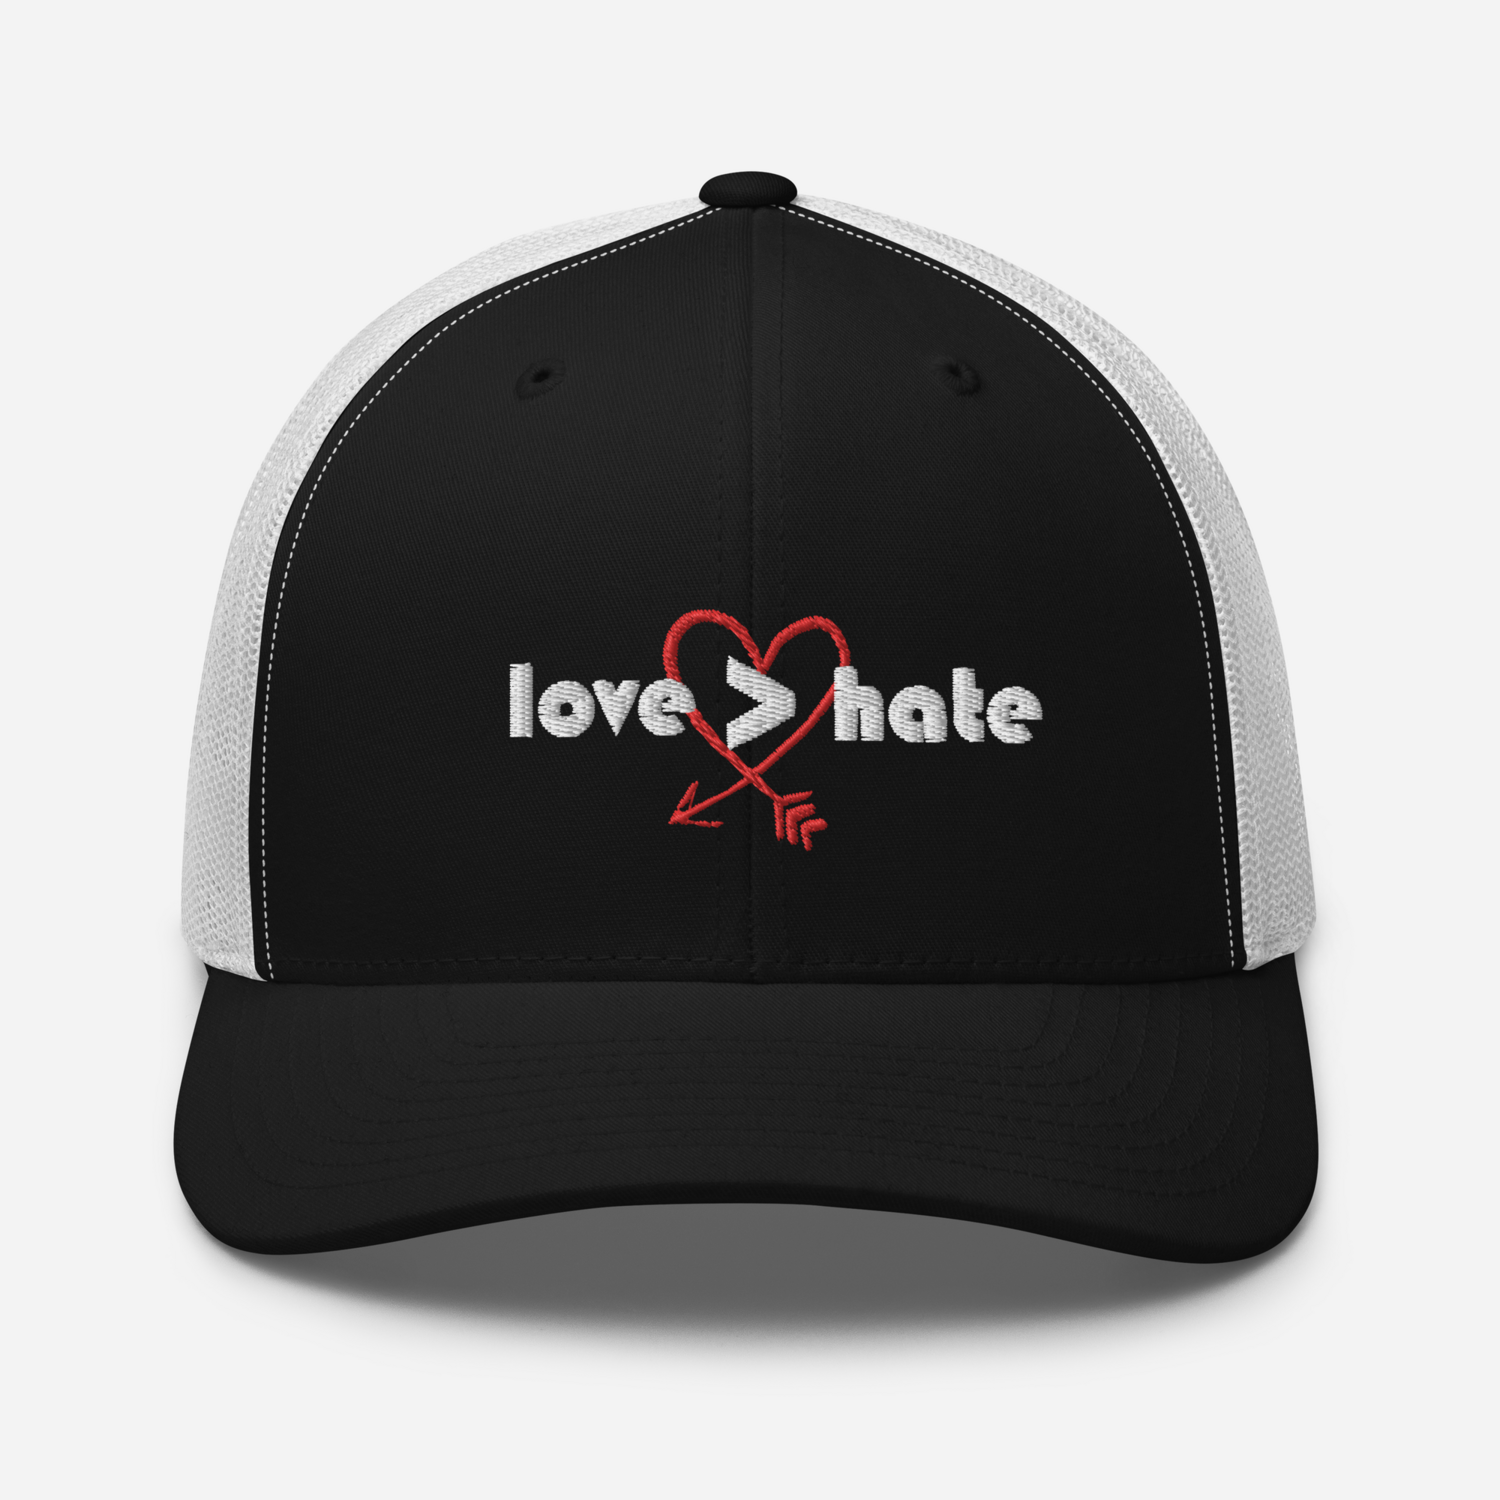 Love not hate trucker hat